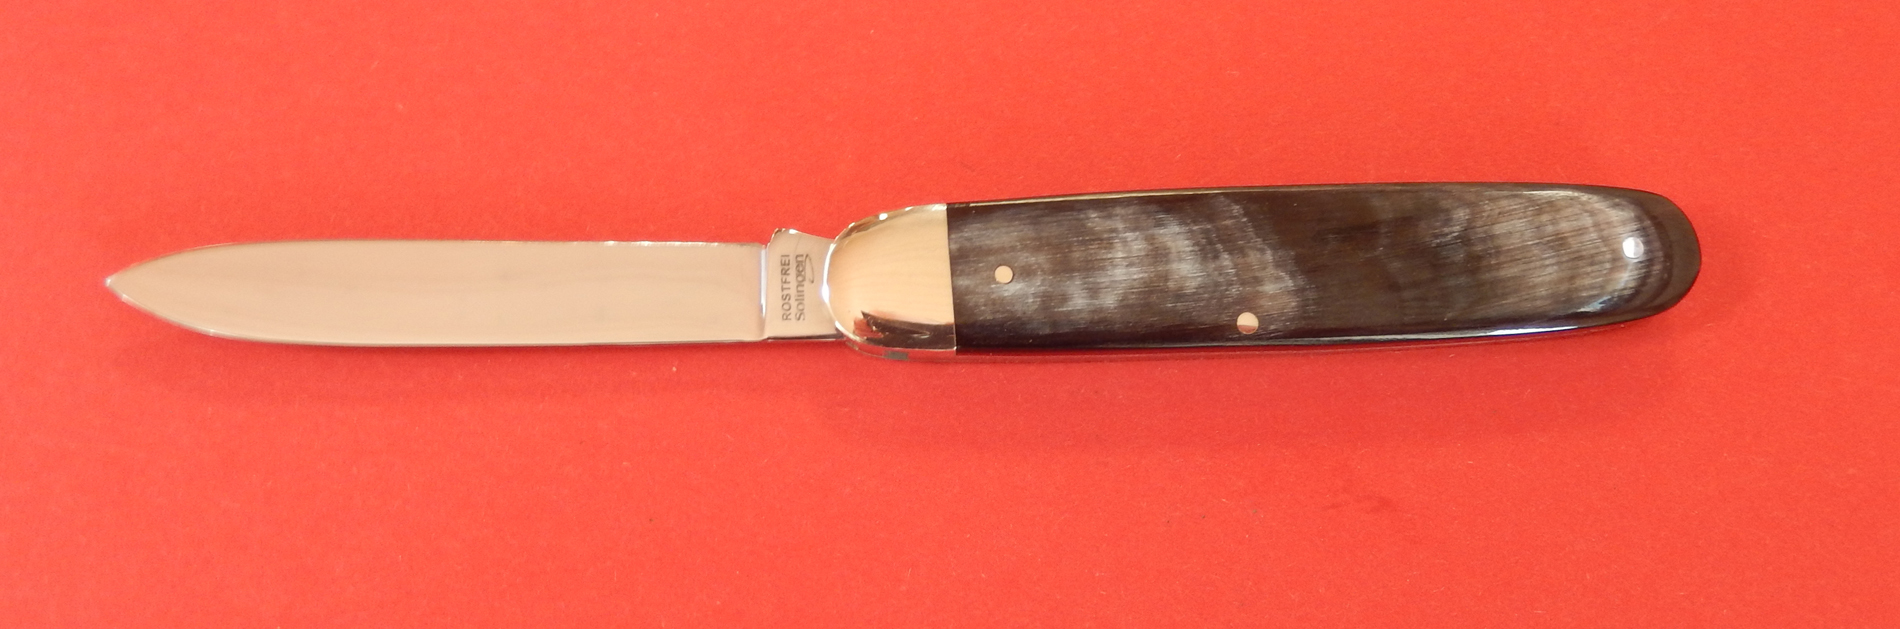 Picknickmesser- Bunthorn 3 tlg. von F. Hartkopf Made in SG bei ISS bestellen